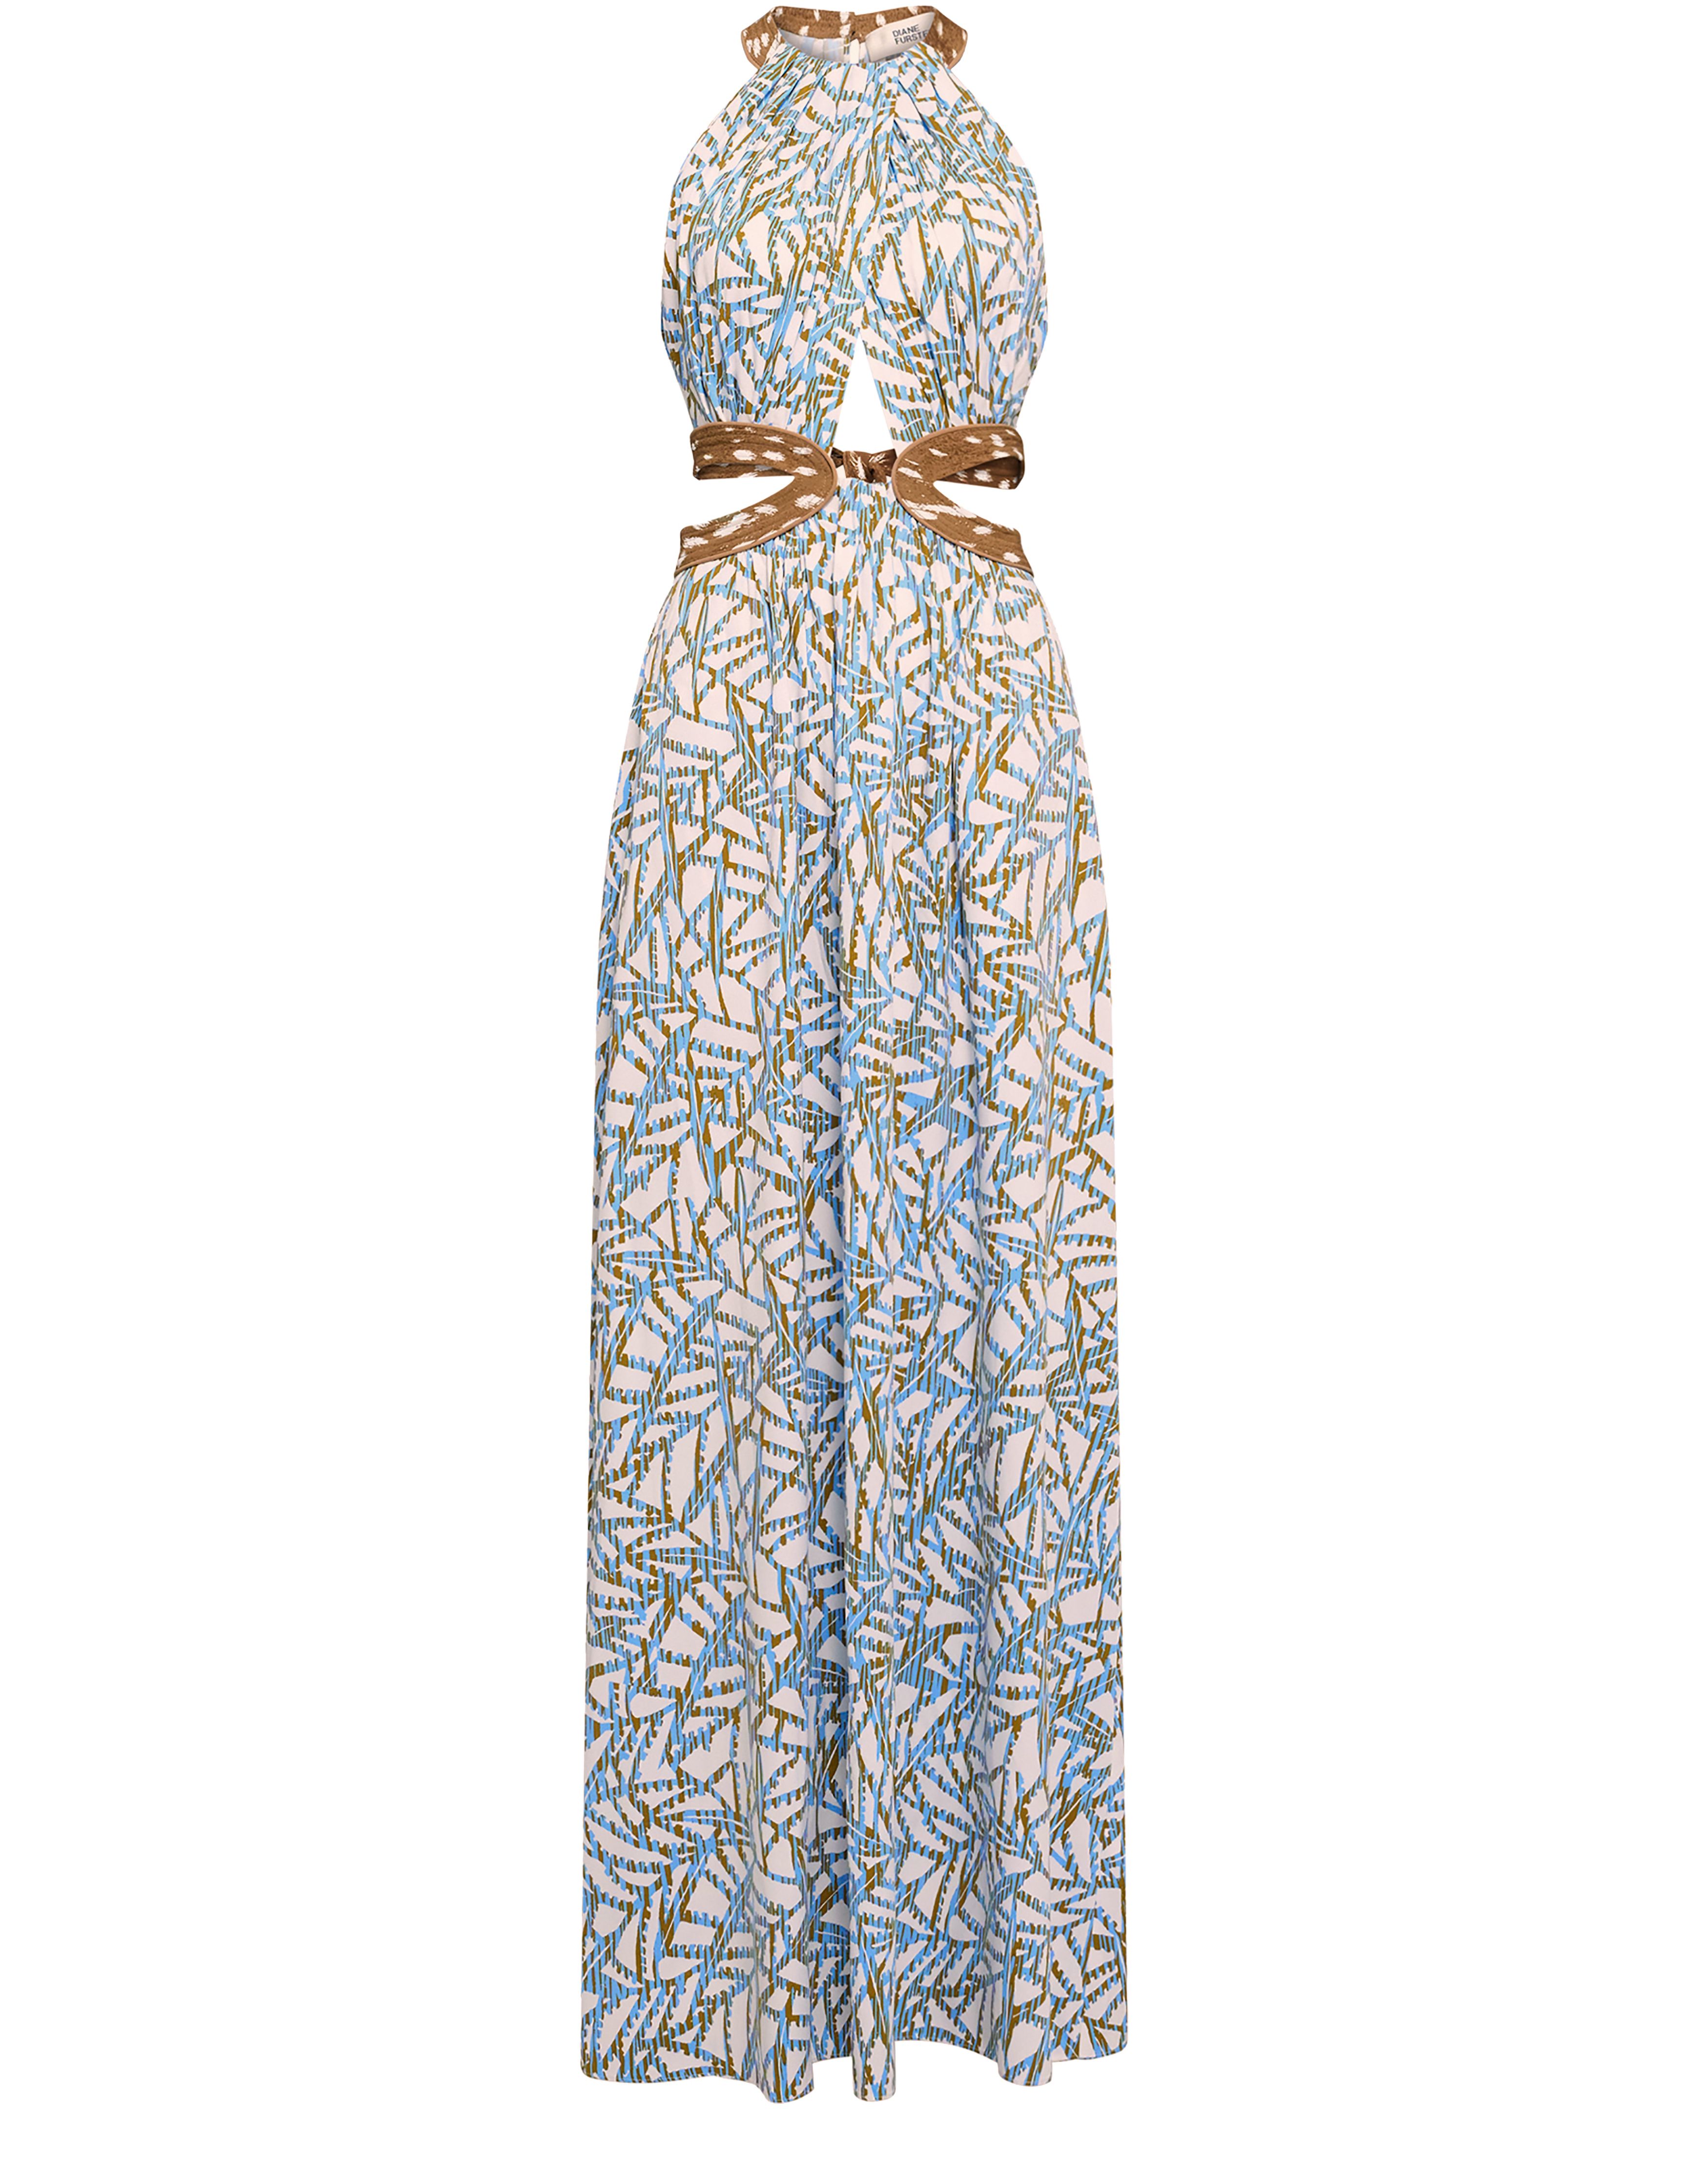 Diane Von Furstenberg Elizabeth dress